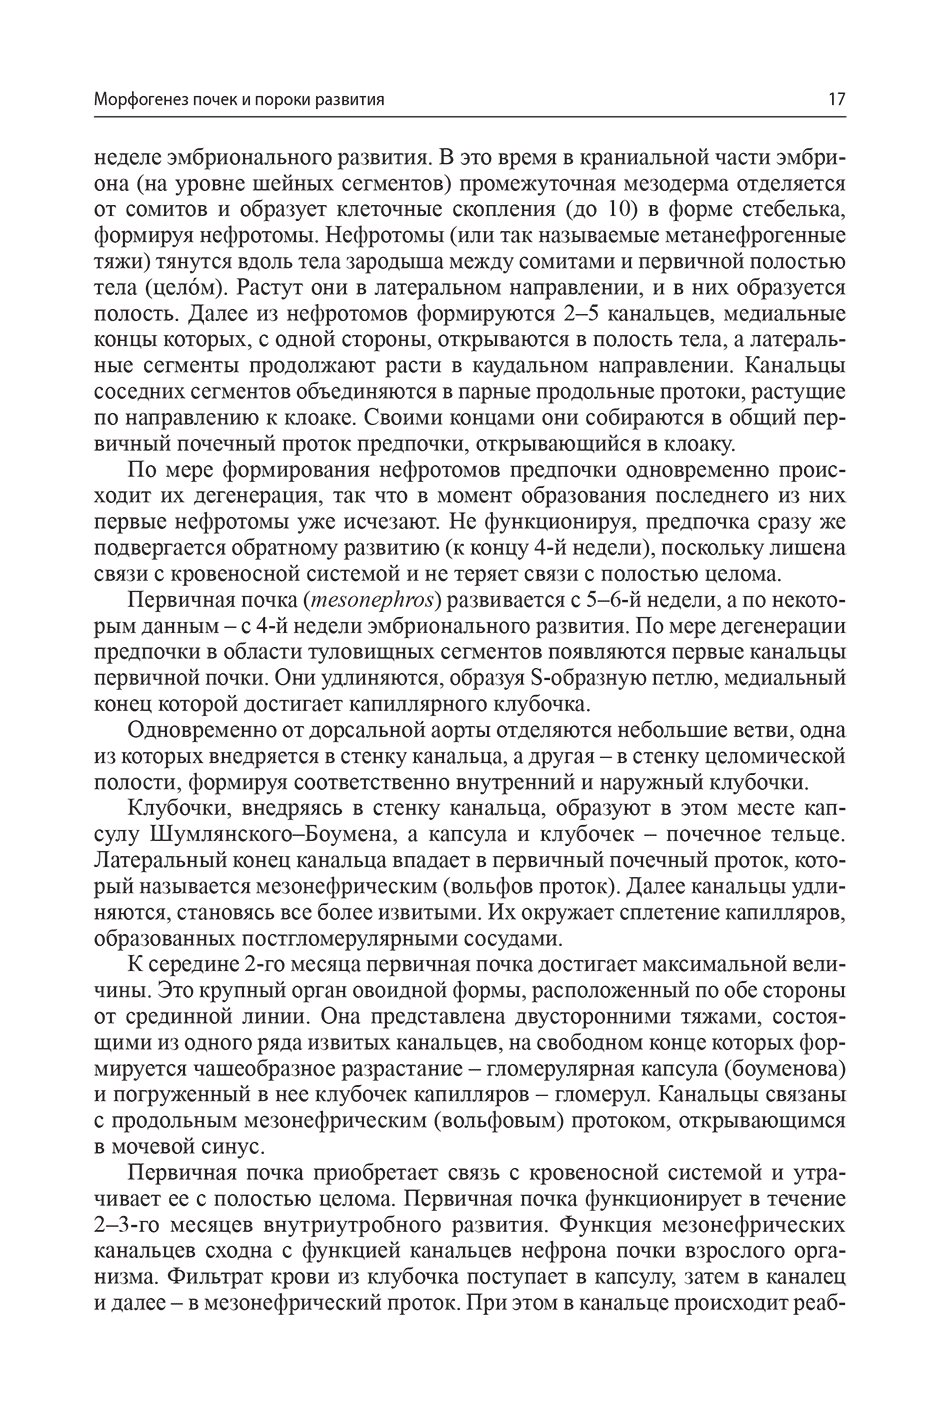 Пример страницы из книги "Детская нефрология: учебник" - Шумилов П. В.